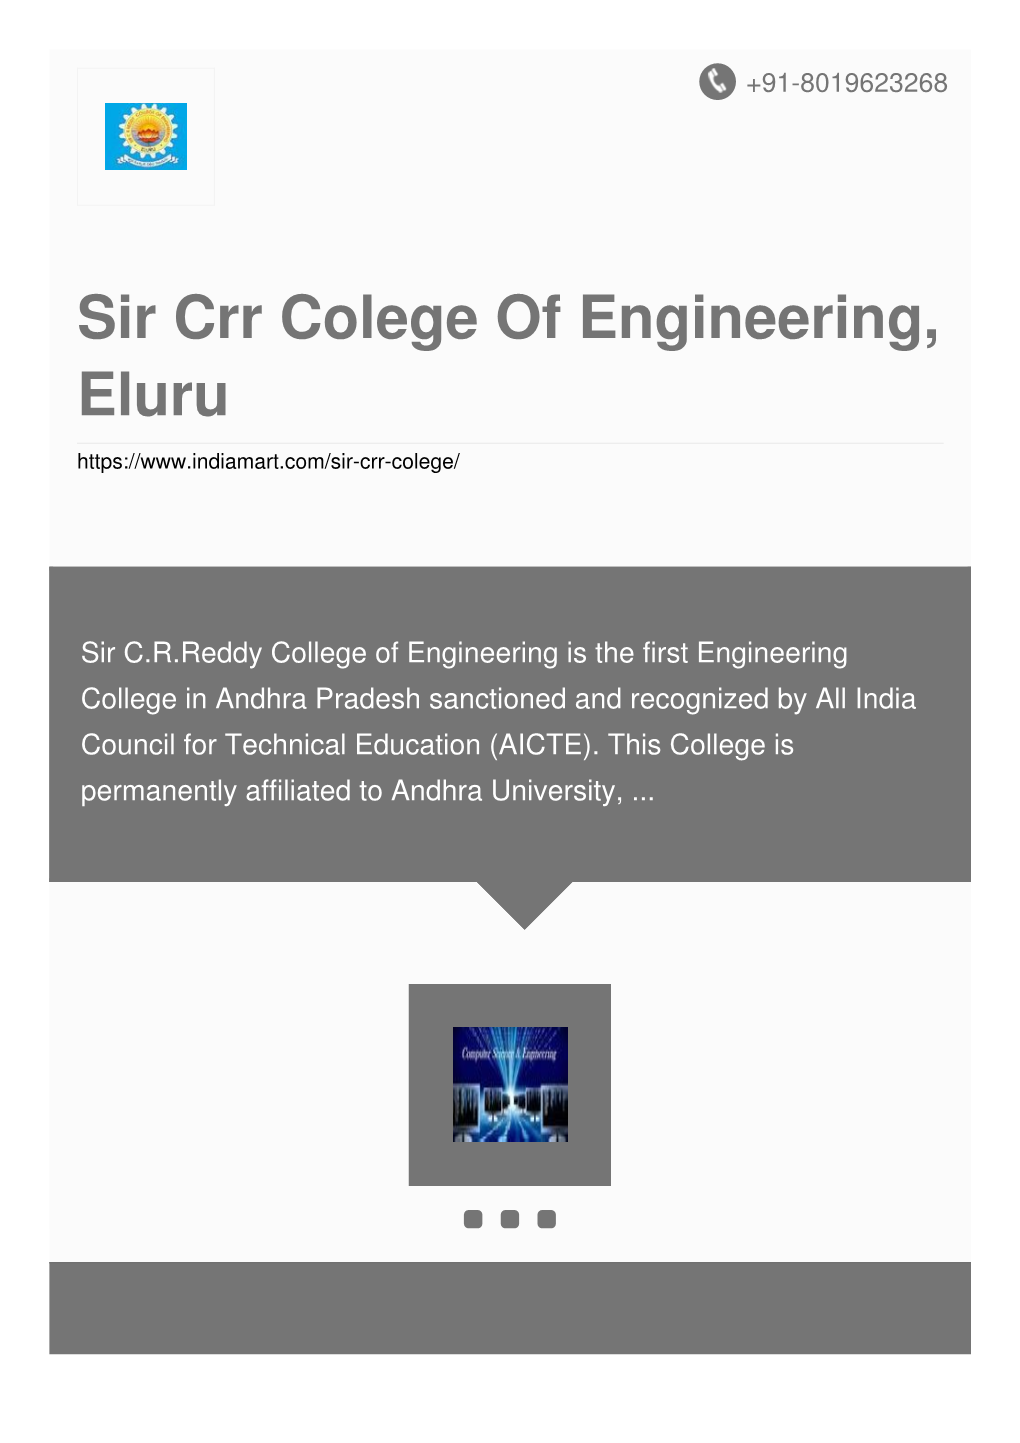 Sir Crr Colege of Engineering, Eluru